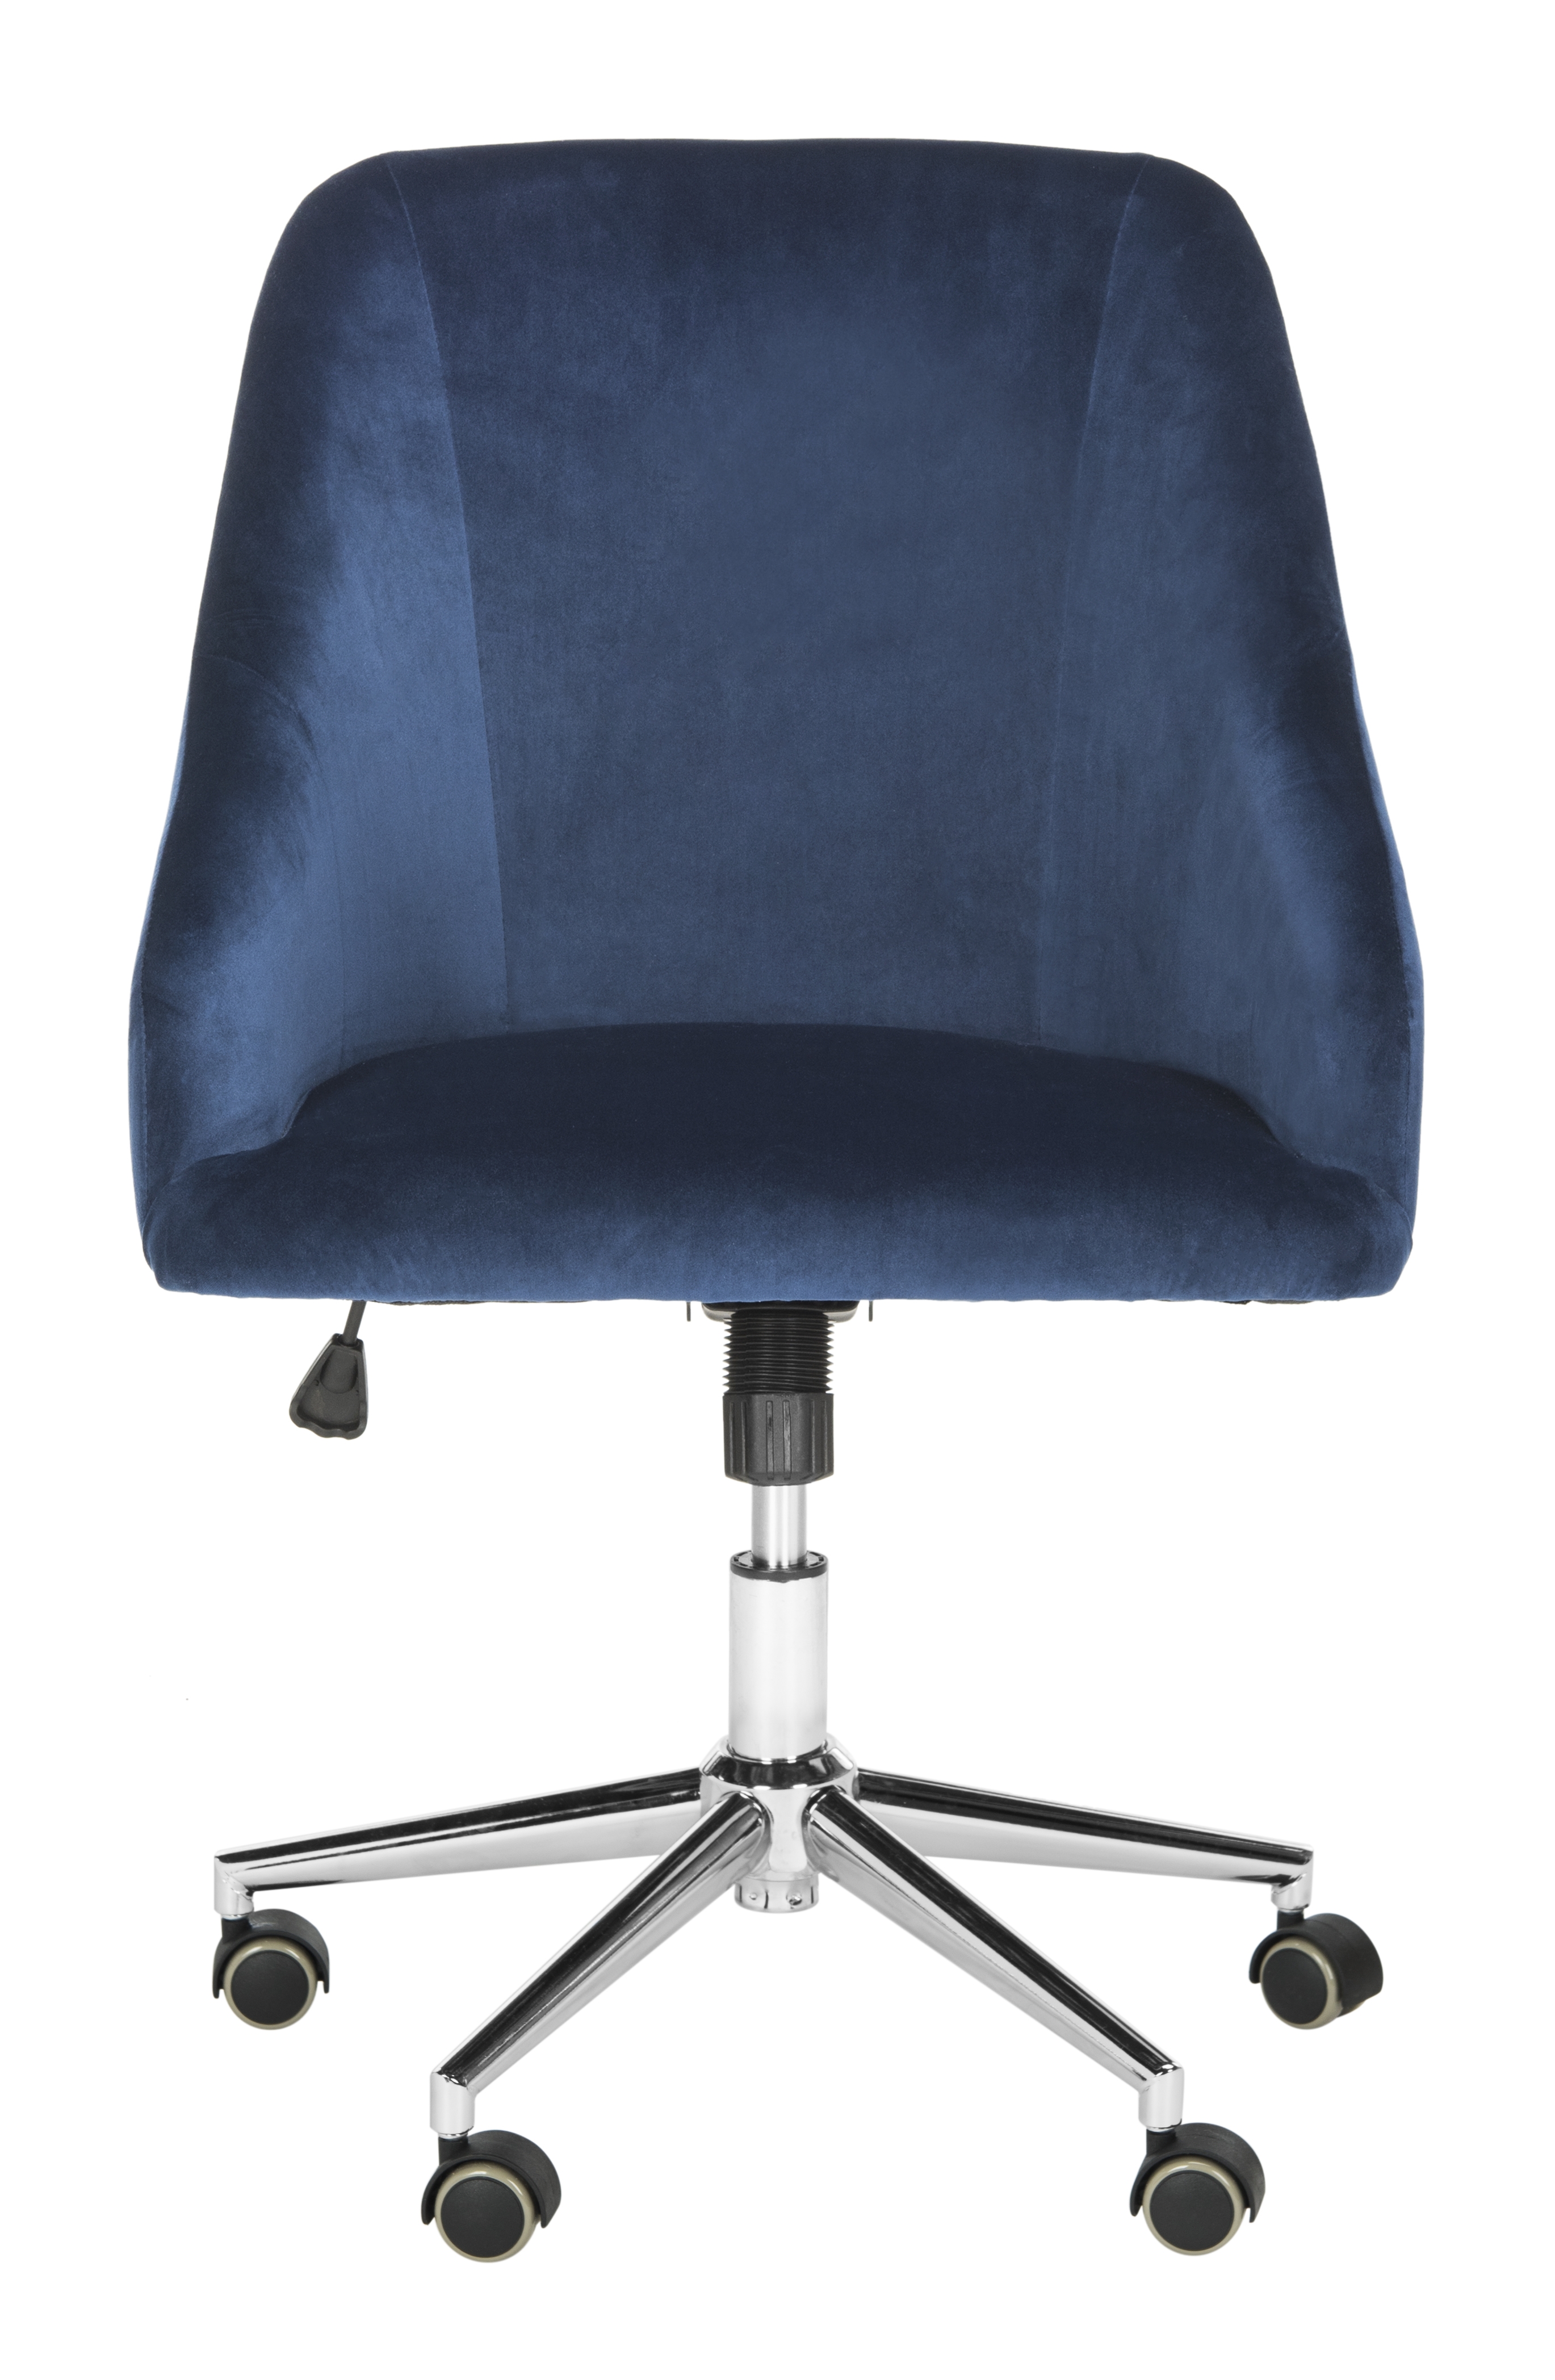 Adrienne Velvet Chrome Leg Swivel Office Chair - Navy/Chrome - Arlo Home - Image 0